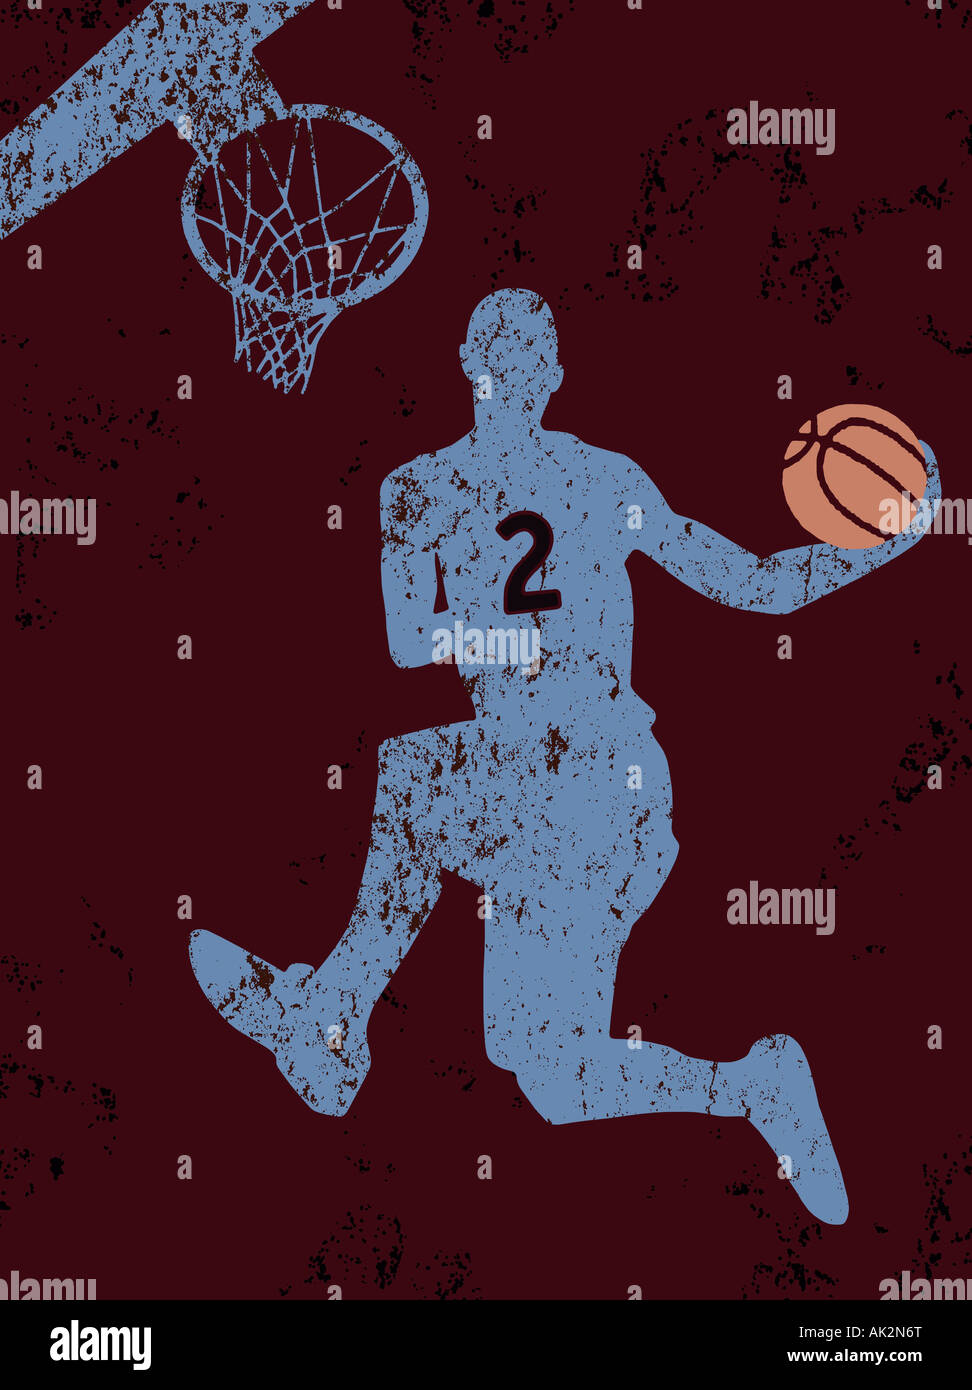 El jugador de baloncesto haciendo un slam dunk Foto de stock